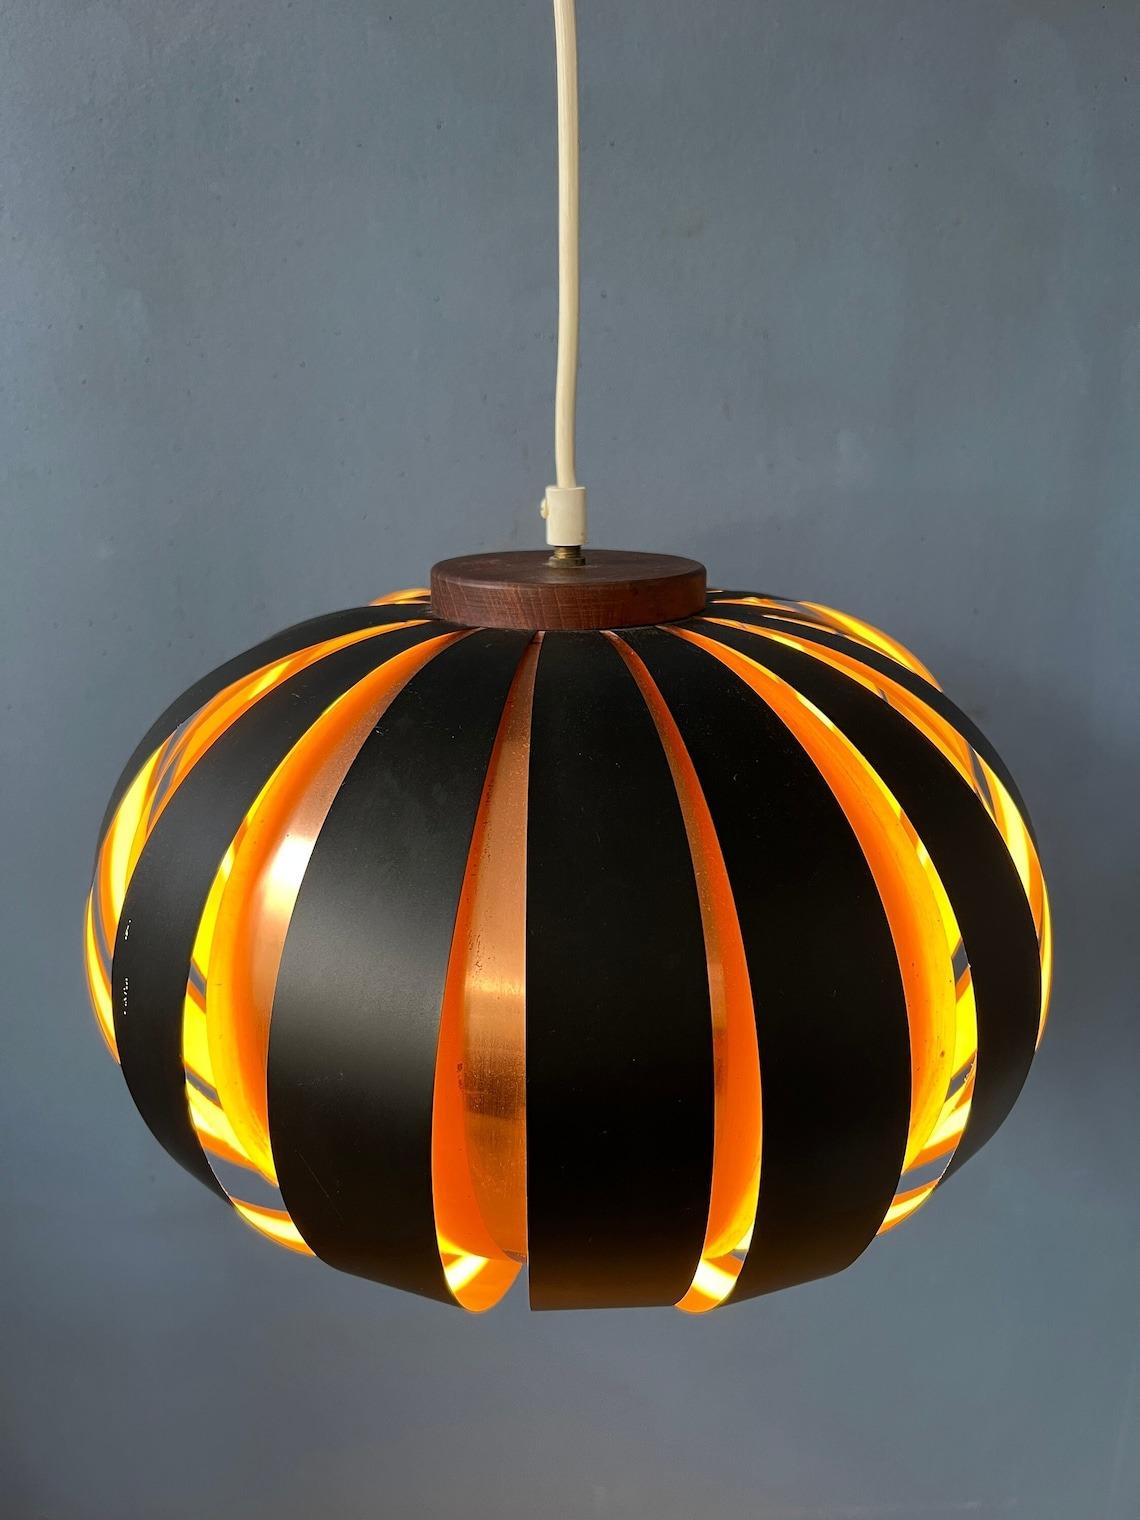 Une lampe suspendue très spéciale de l'ère spatiale, semblable à une lune, dans le style de Werner Schou. Les lampes se composent d'un abat-jour extérieur en acrylique de couleur orange/cuivre et d'un abat-jour intérieur blanc. La lampe nécessite